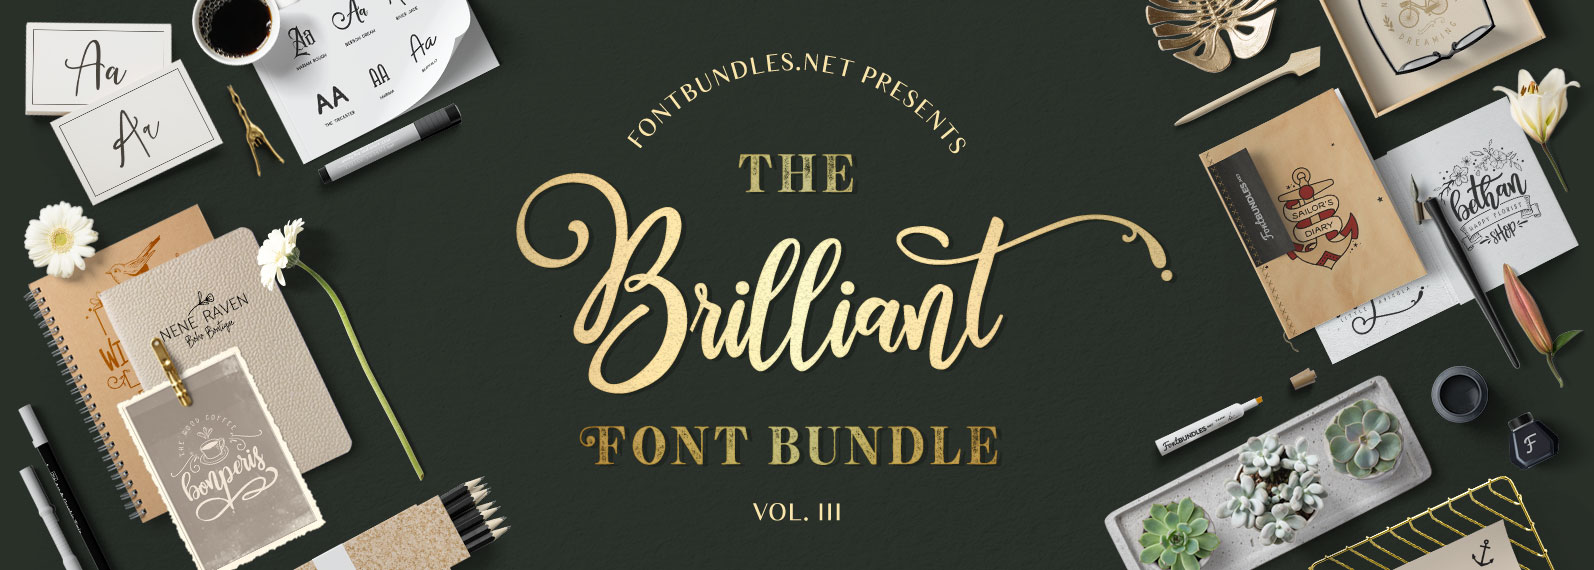 The-Brilliant-Font-Bundle-Vol-III-cover.jpg